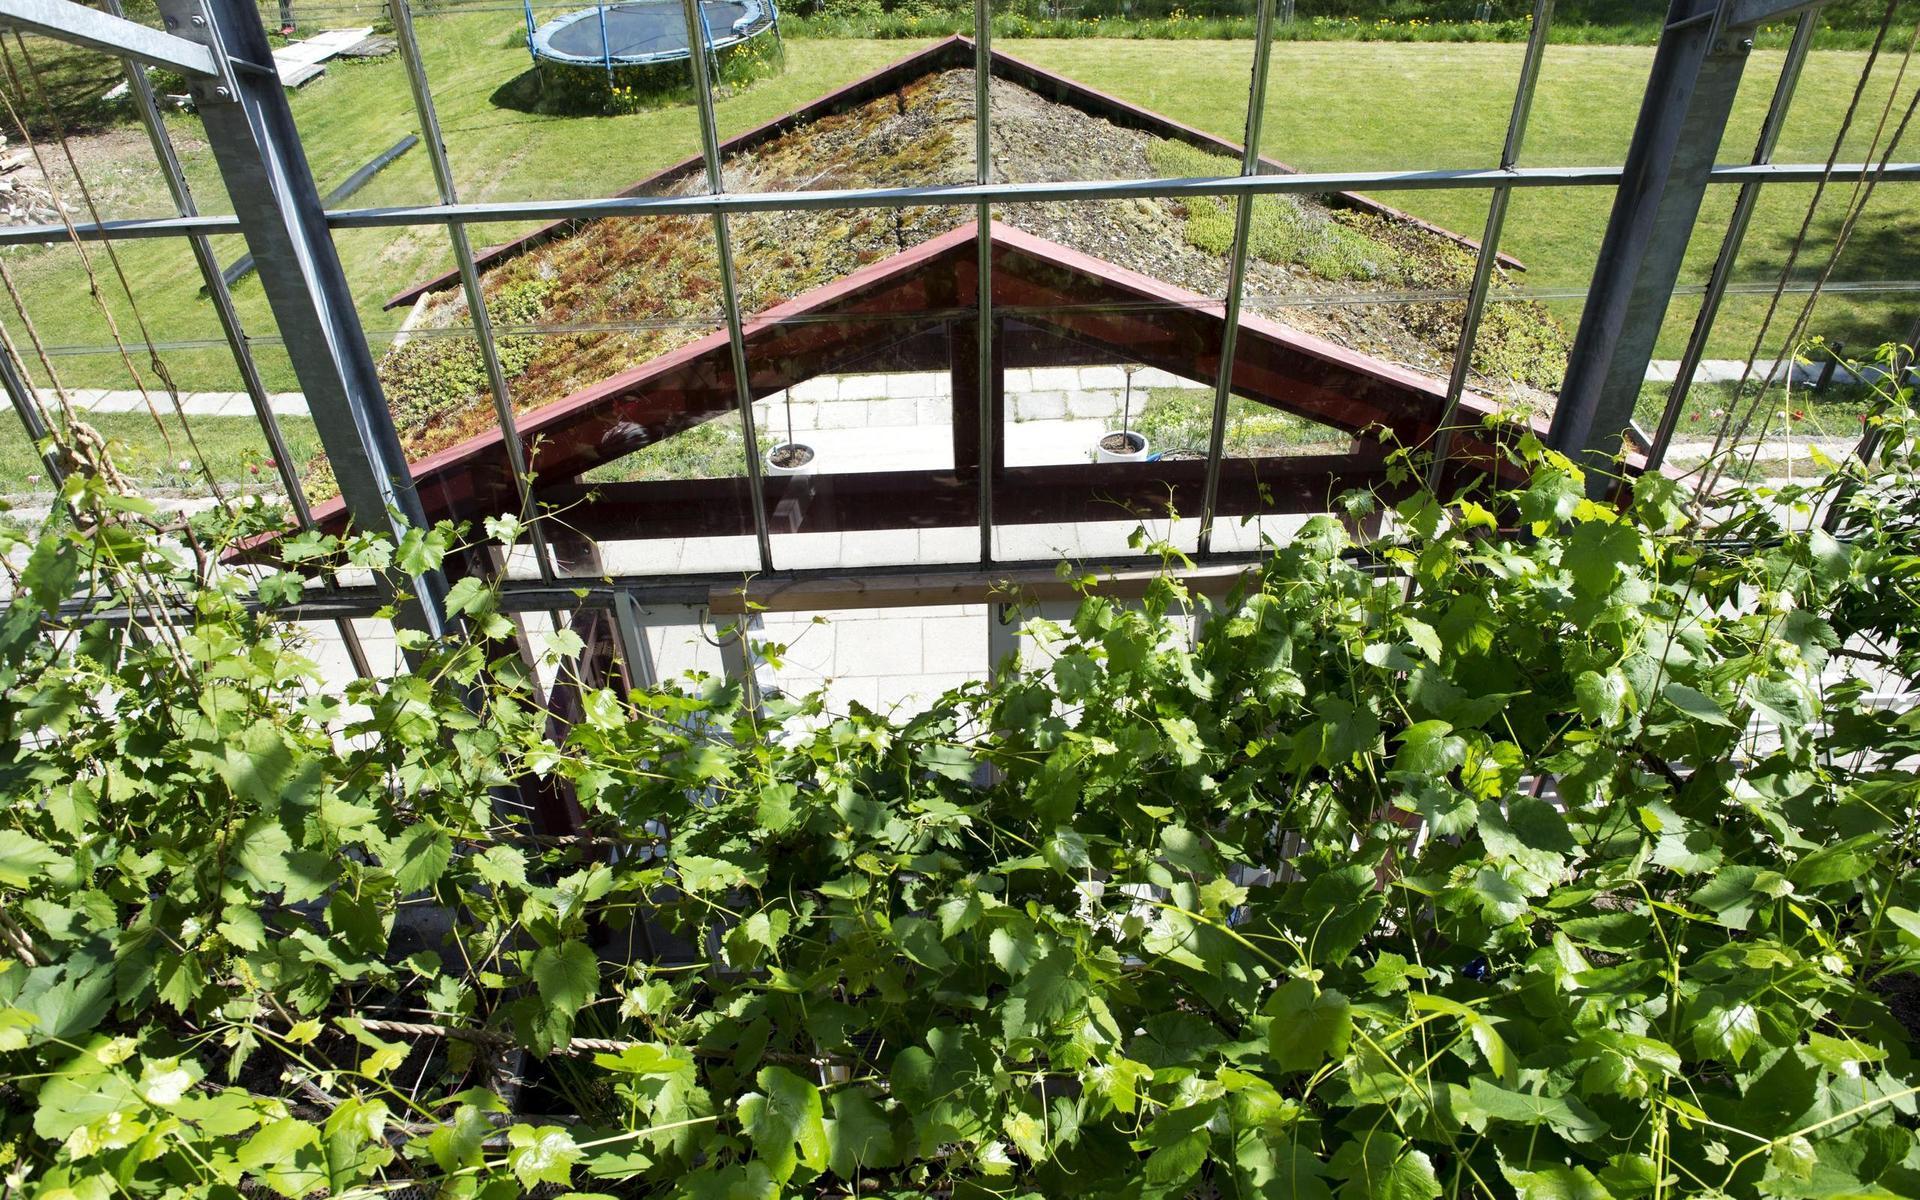 Anders och Rosemary Solvarm med sitt timrade hus inbyggt i ett växthus vid Sikhall.Entrén och vinrankorGlashus